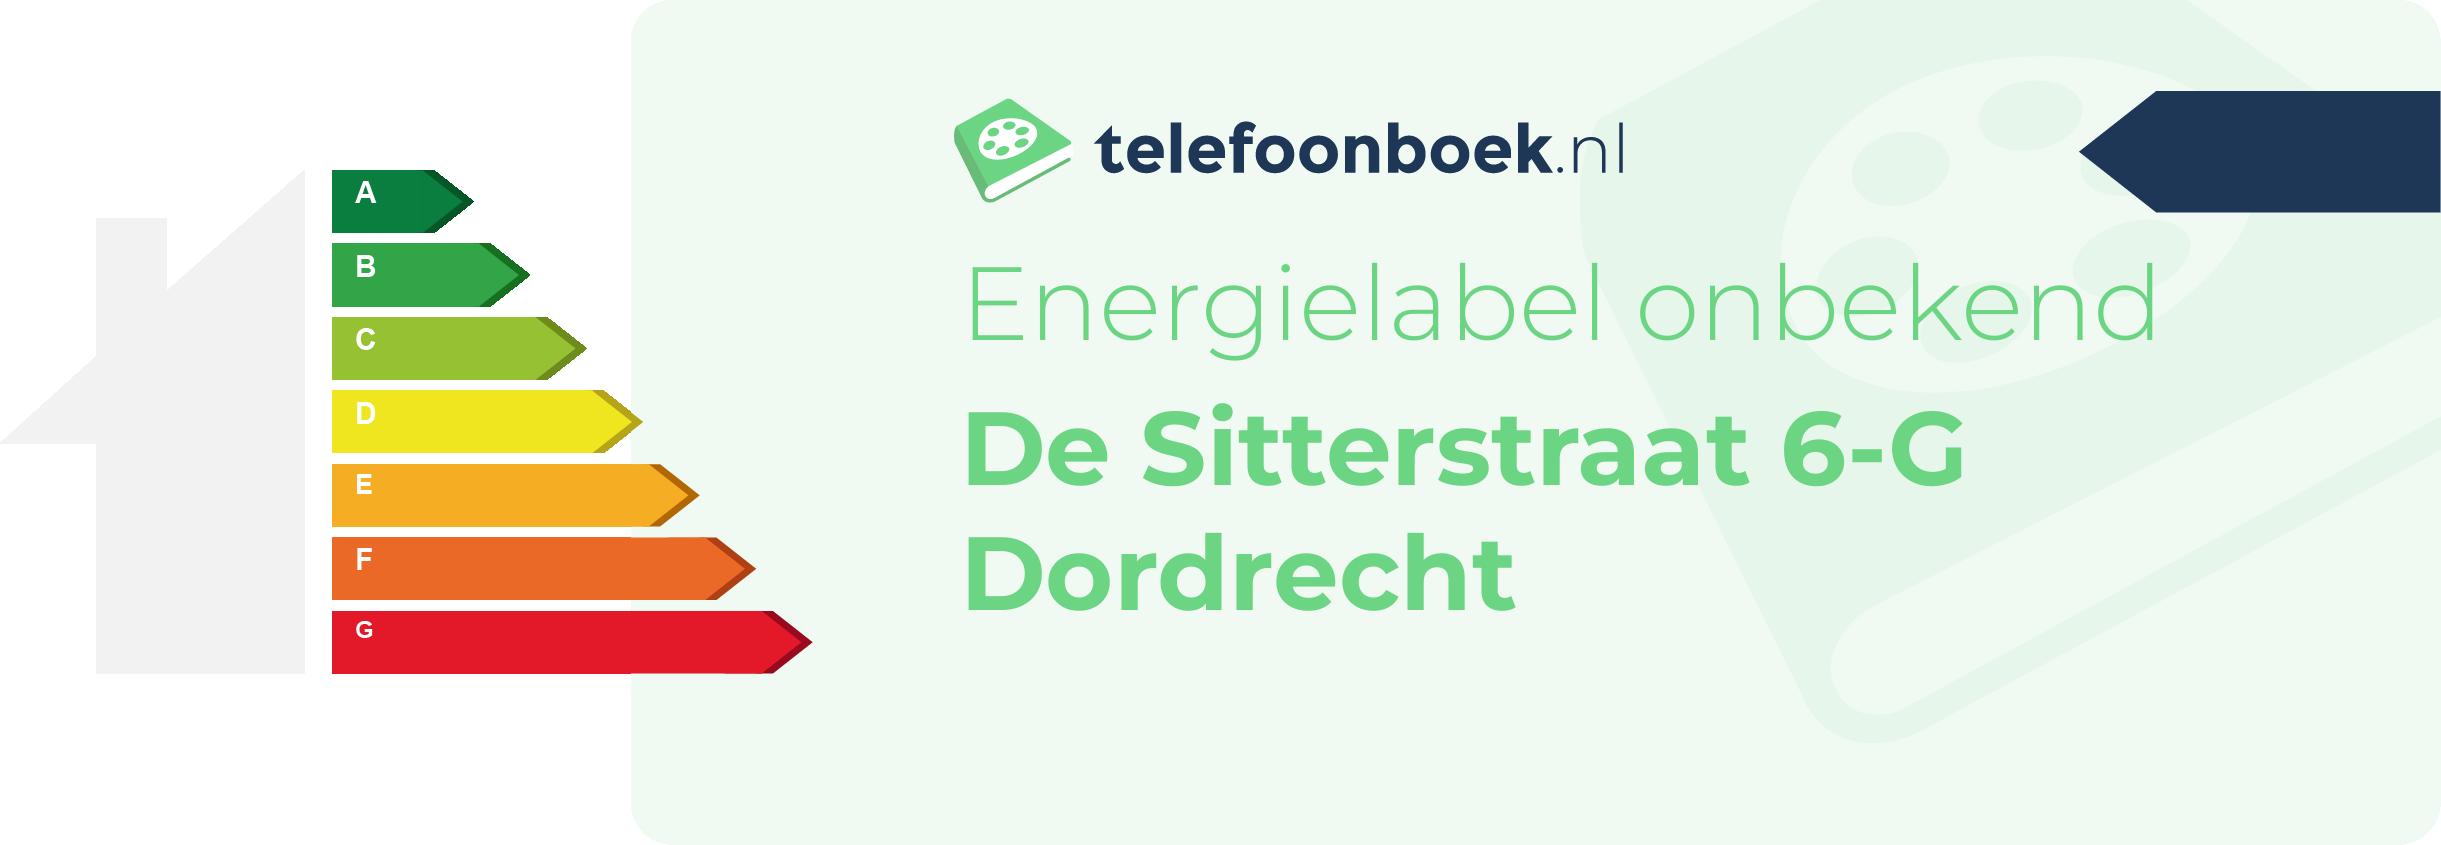 Energielabel De Sitterstraat 6-G Dordrecht